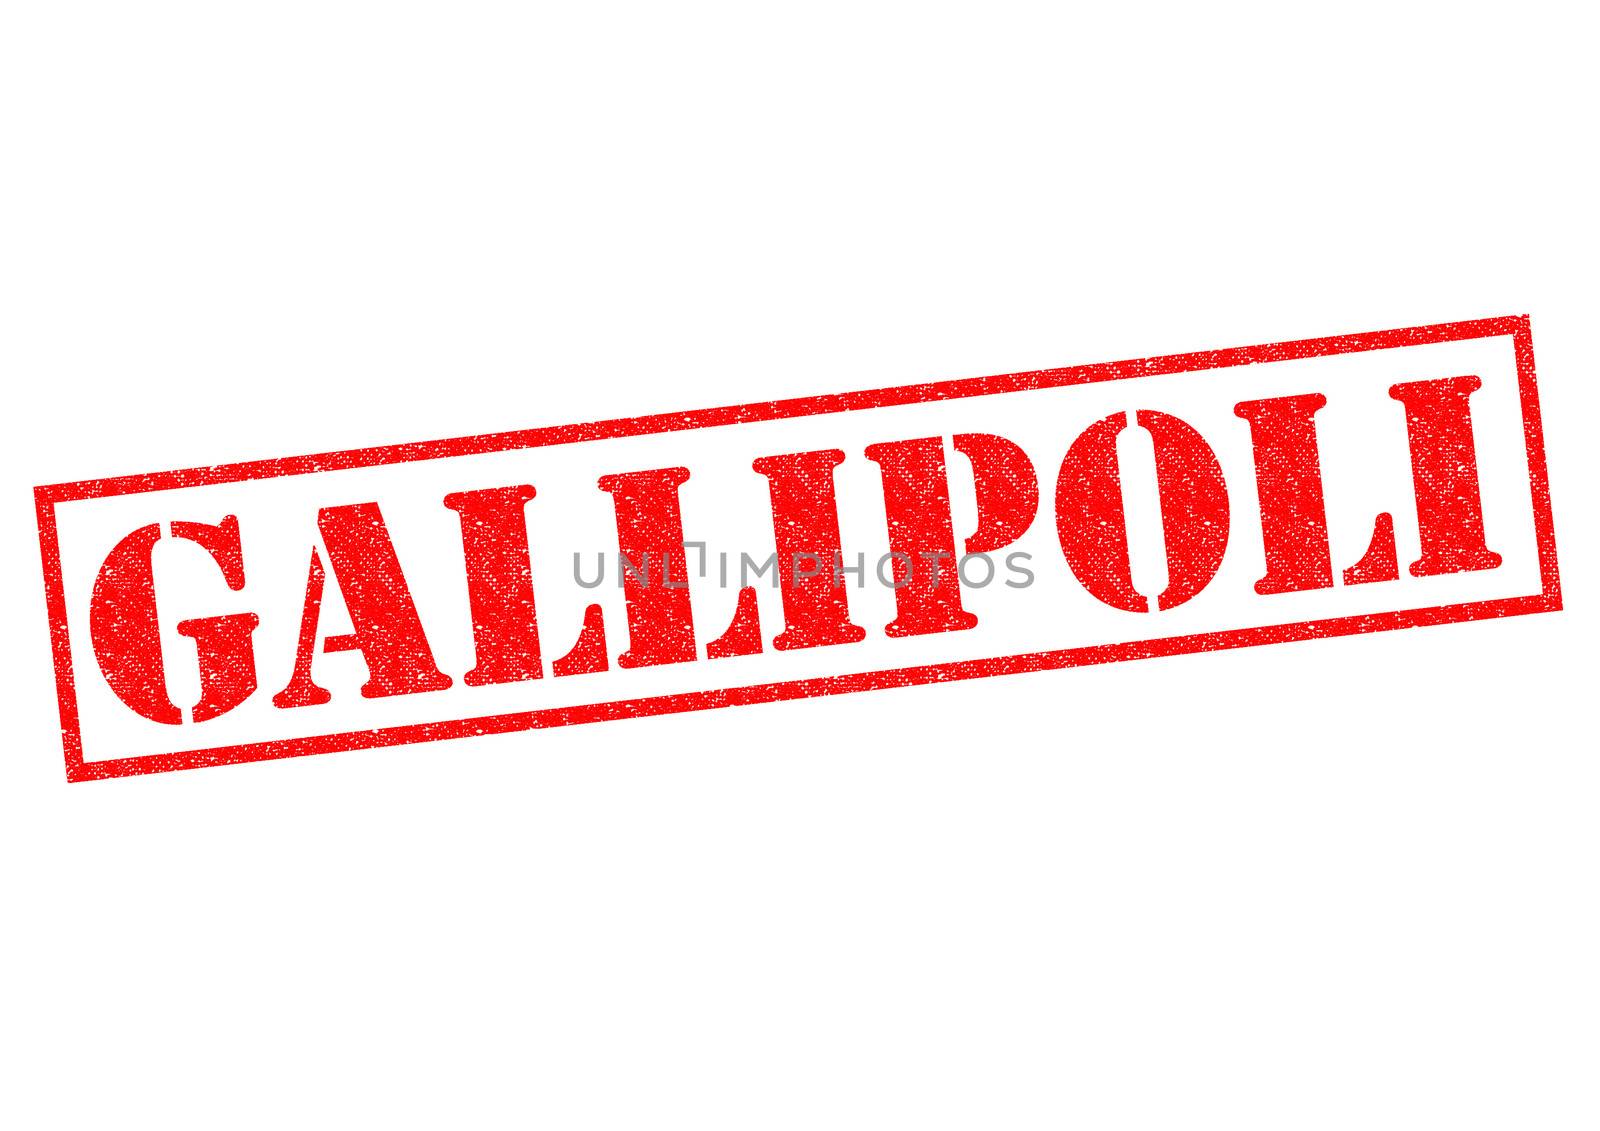 GALLIPOLI by chrisdorney